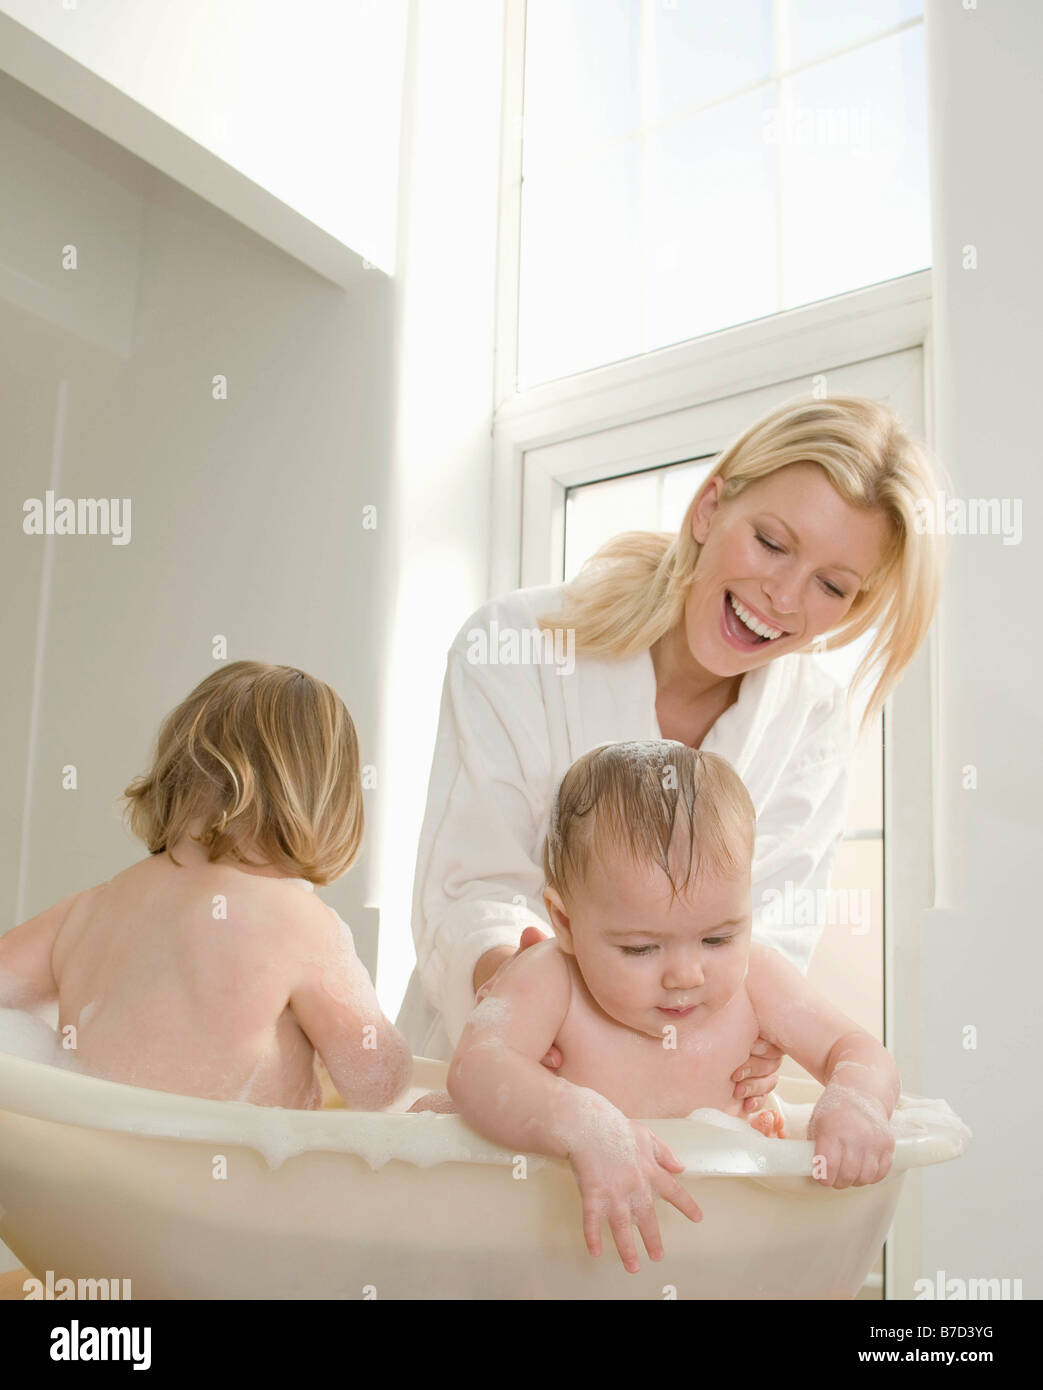 Зрелая мамы в ванне. Мать купает ребенка. Мама купается с детьми в ванной. Фотосессия мама и малыш в ванной. Мама с ребенком в ванной комнате.